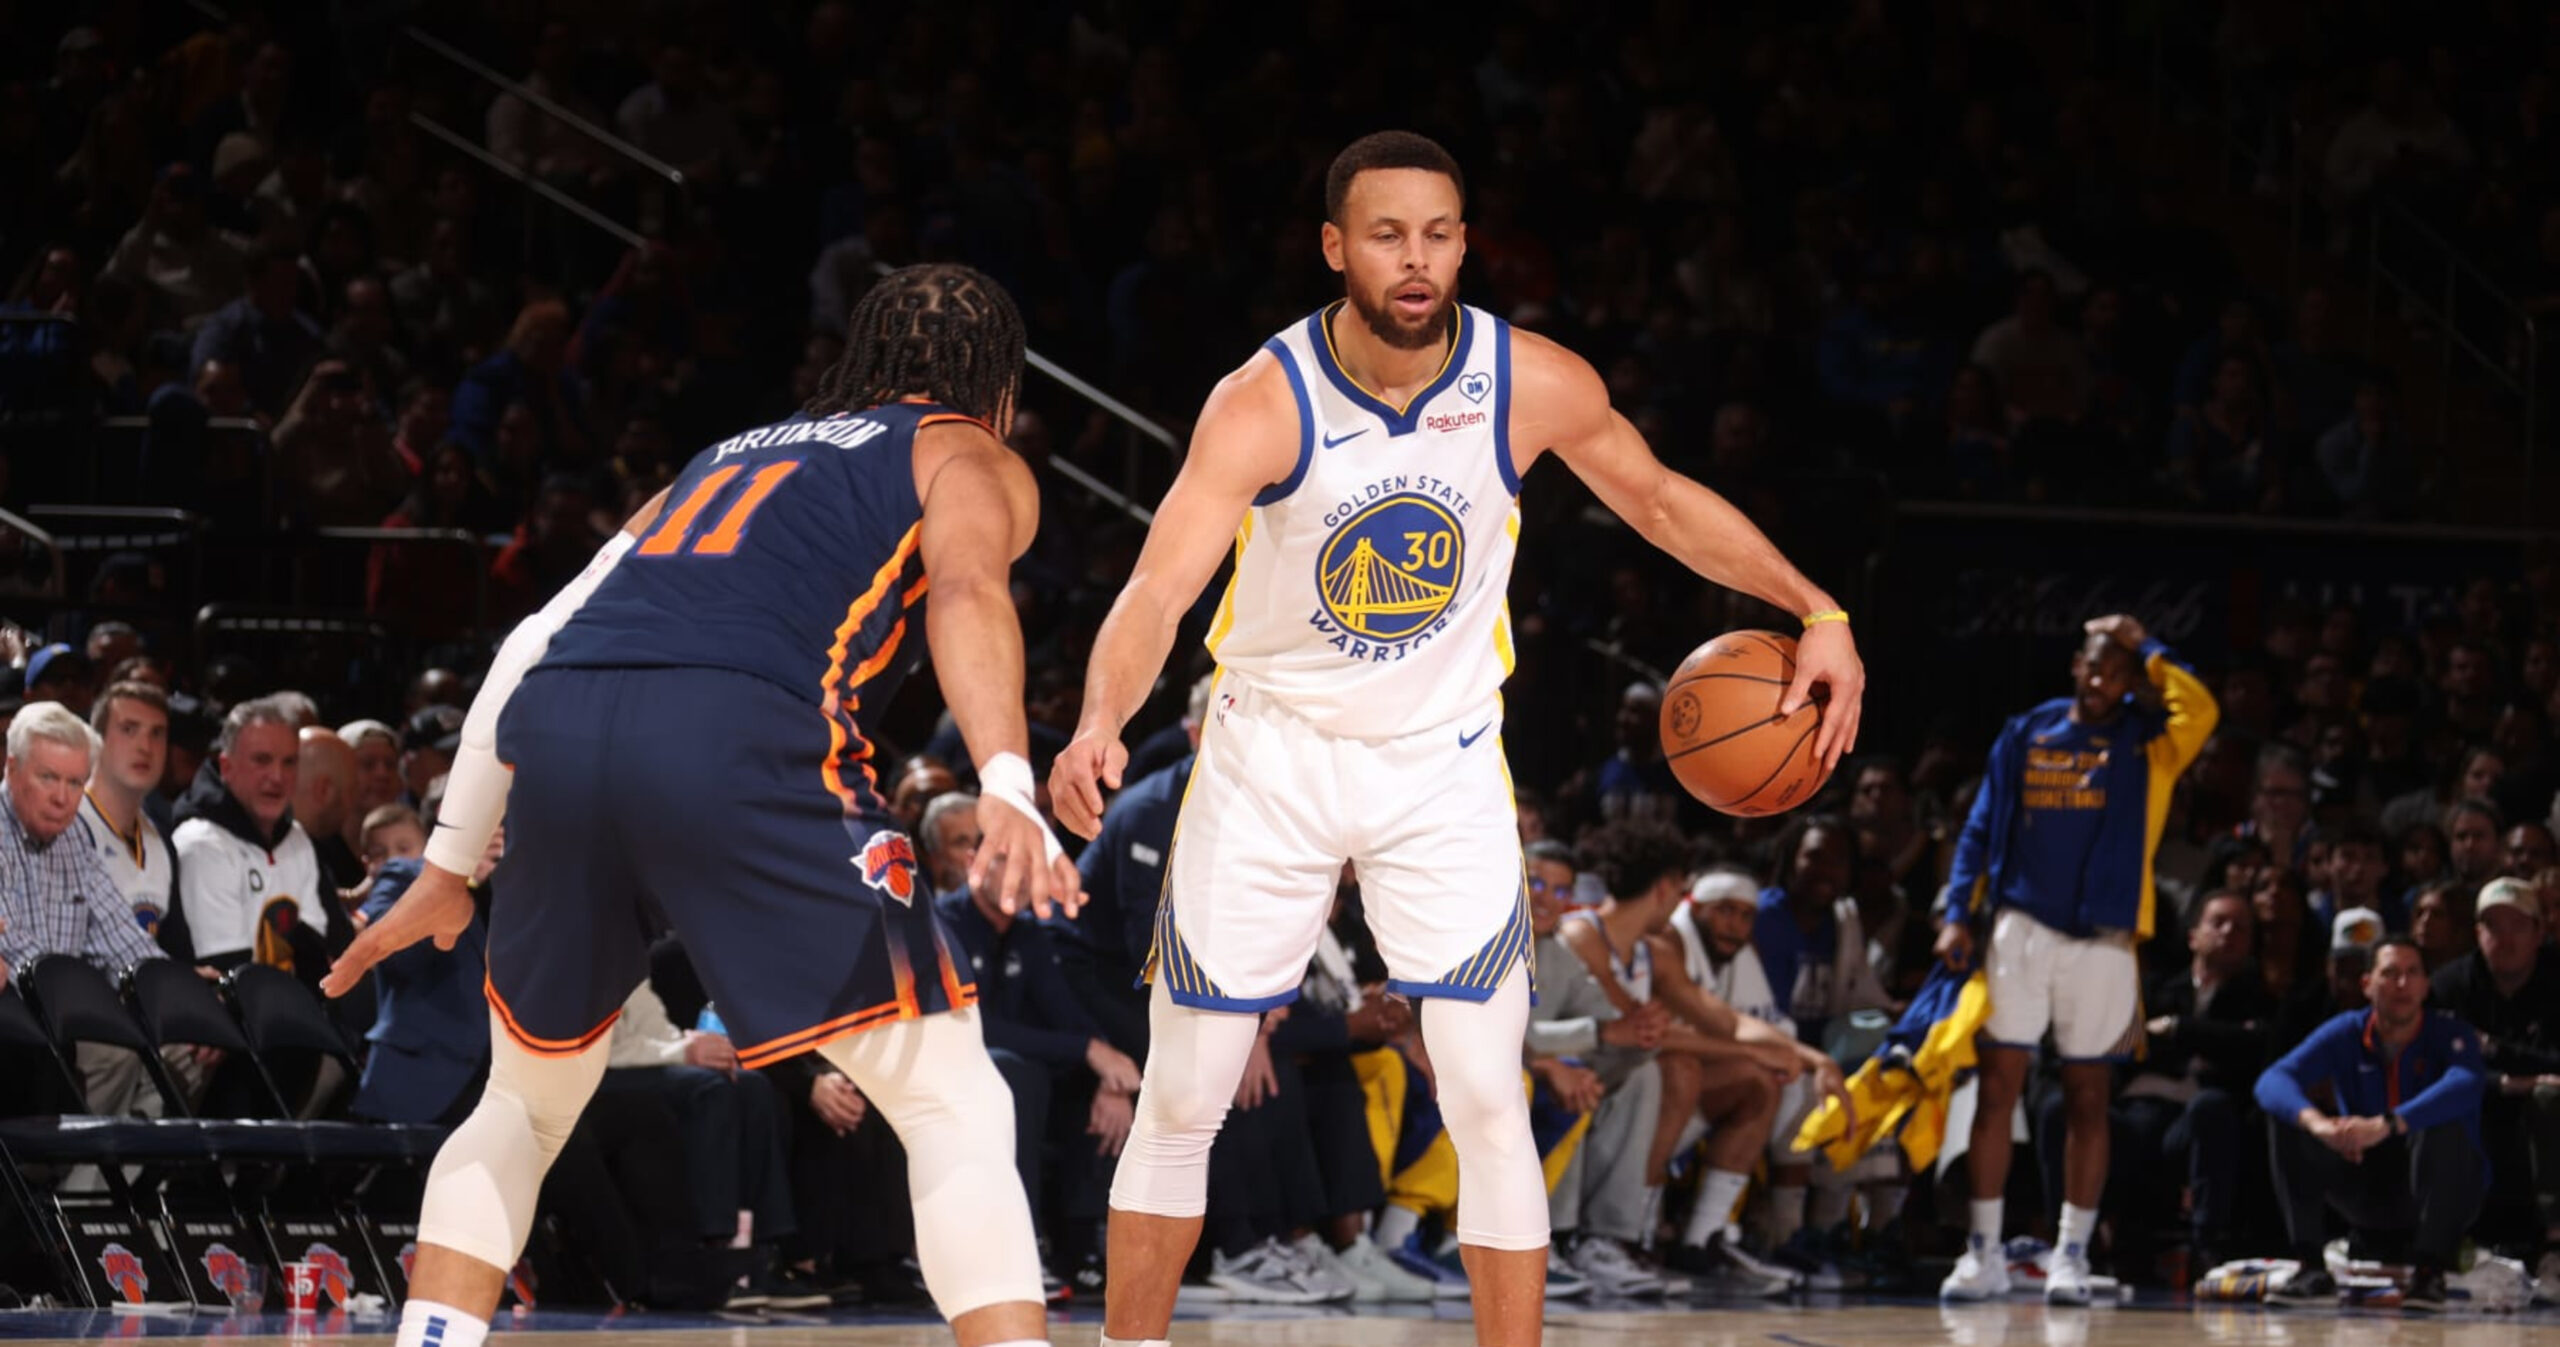 Stephen Curry, Kuminga Praised by NBA Fans as Warriors Beat Jalen Brunson, Knicks